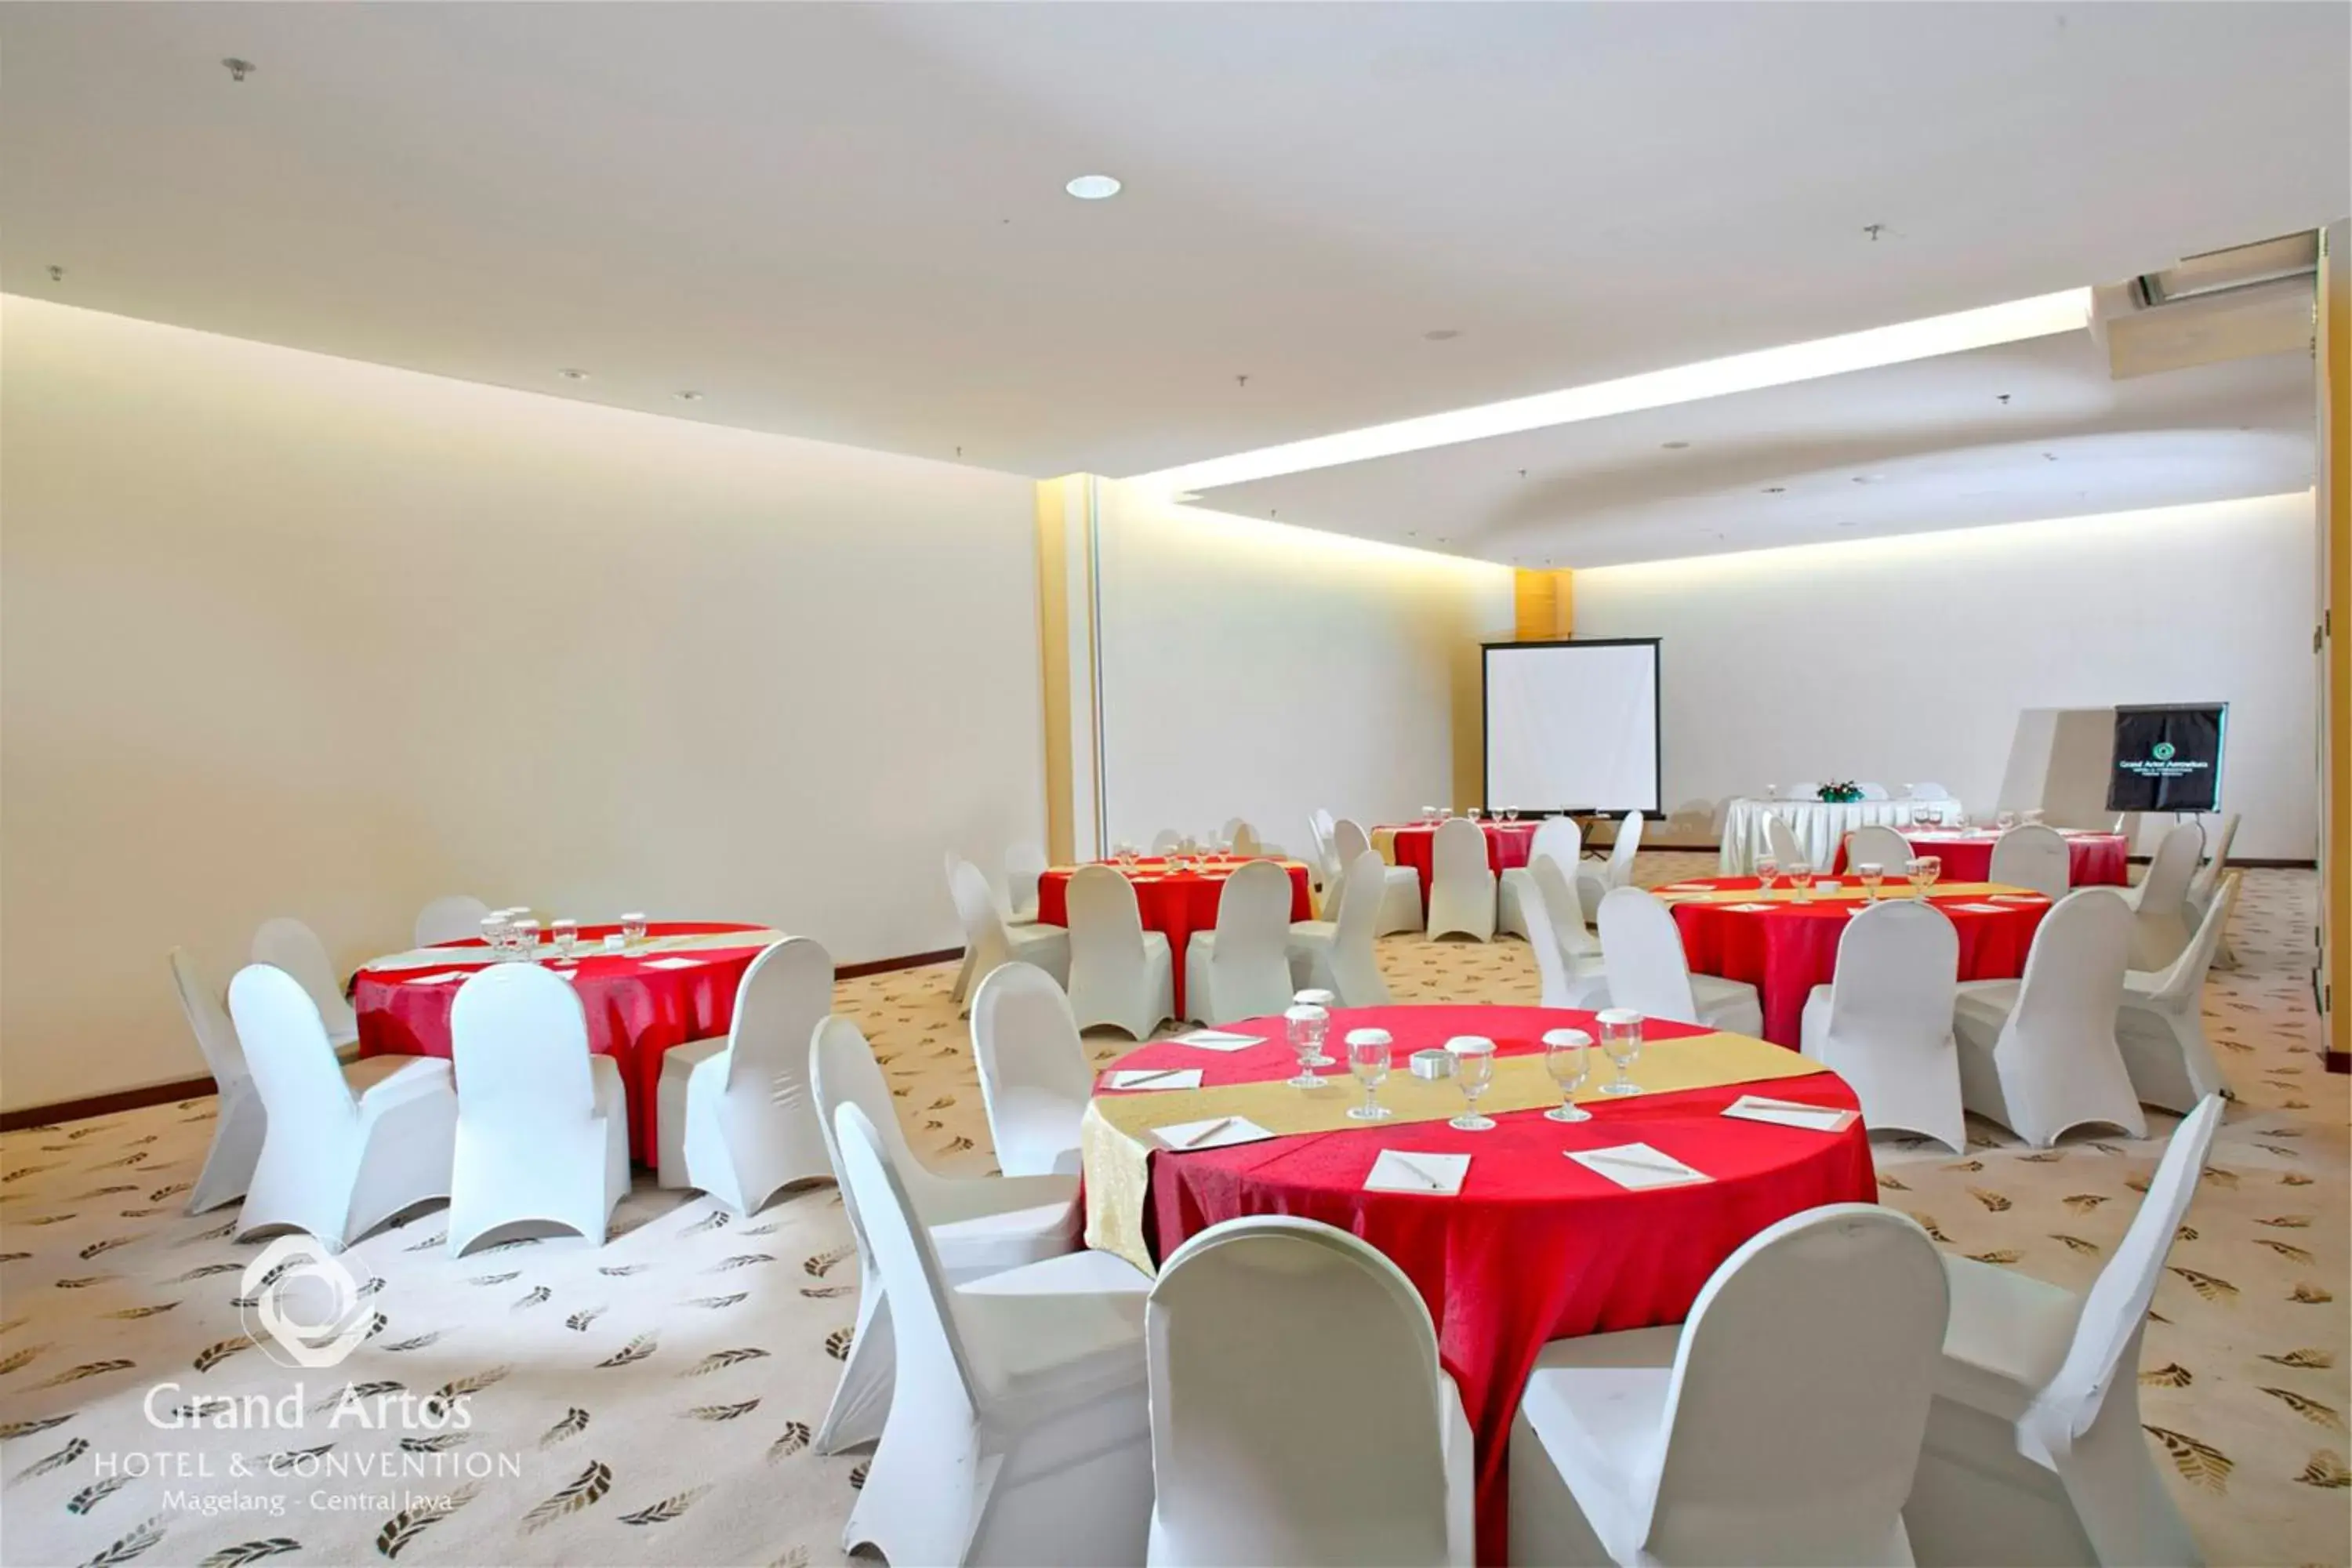 People, Banquet Facilities in Grand Artos Hotel & Convention